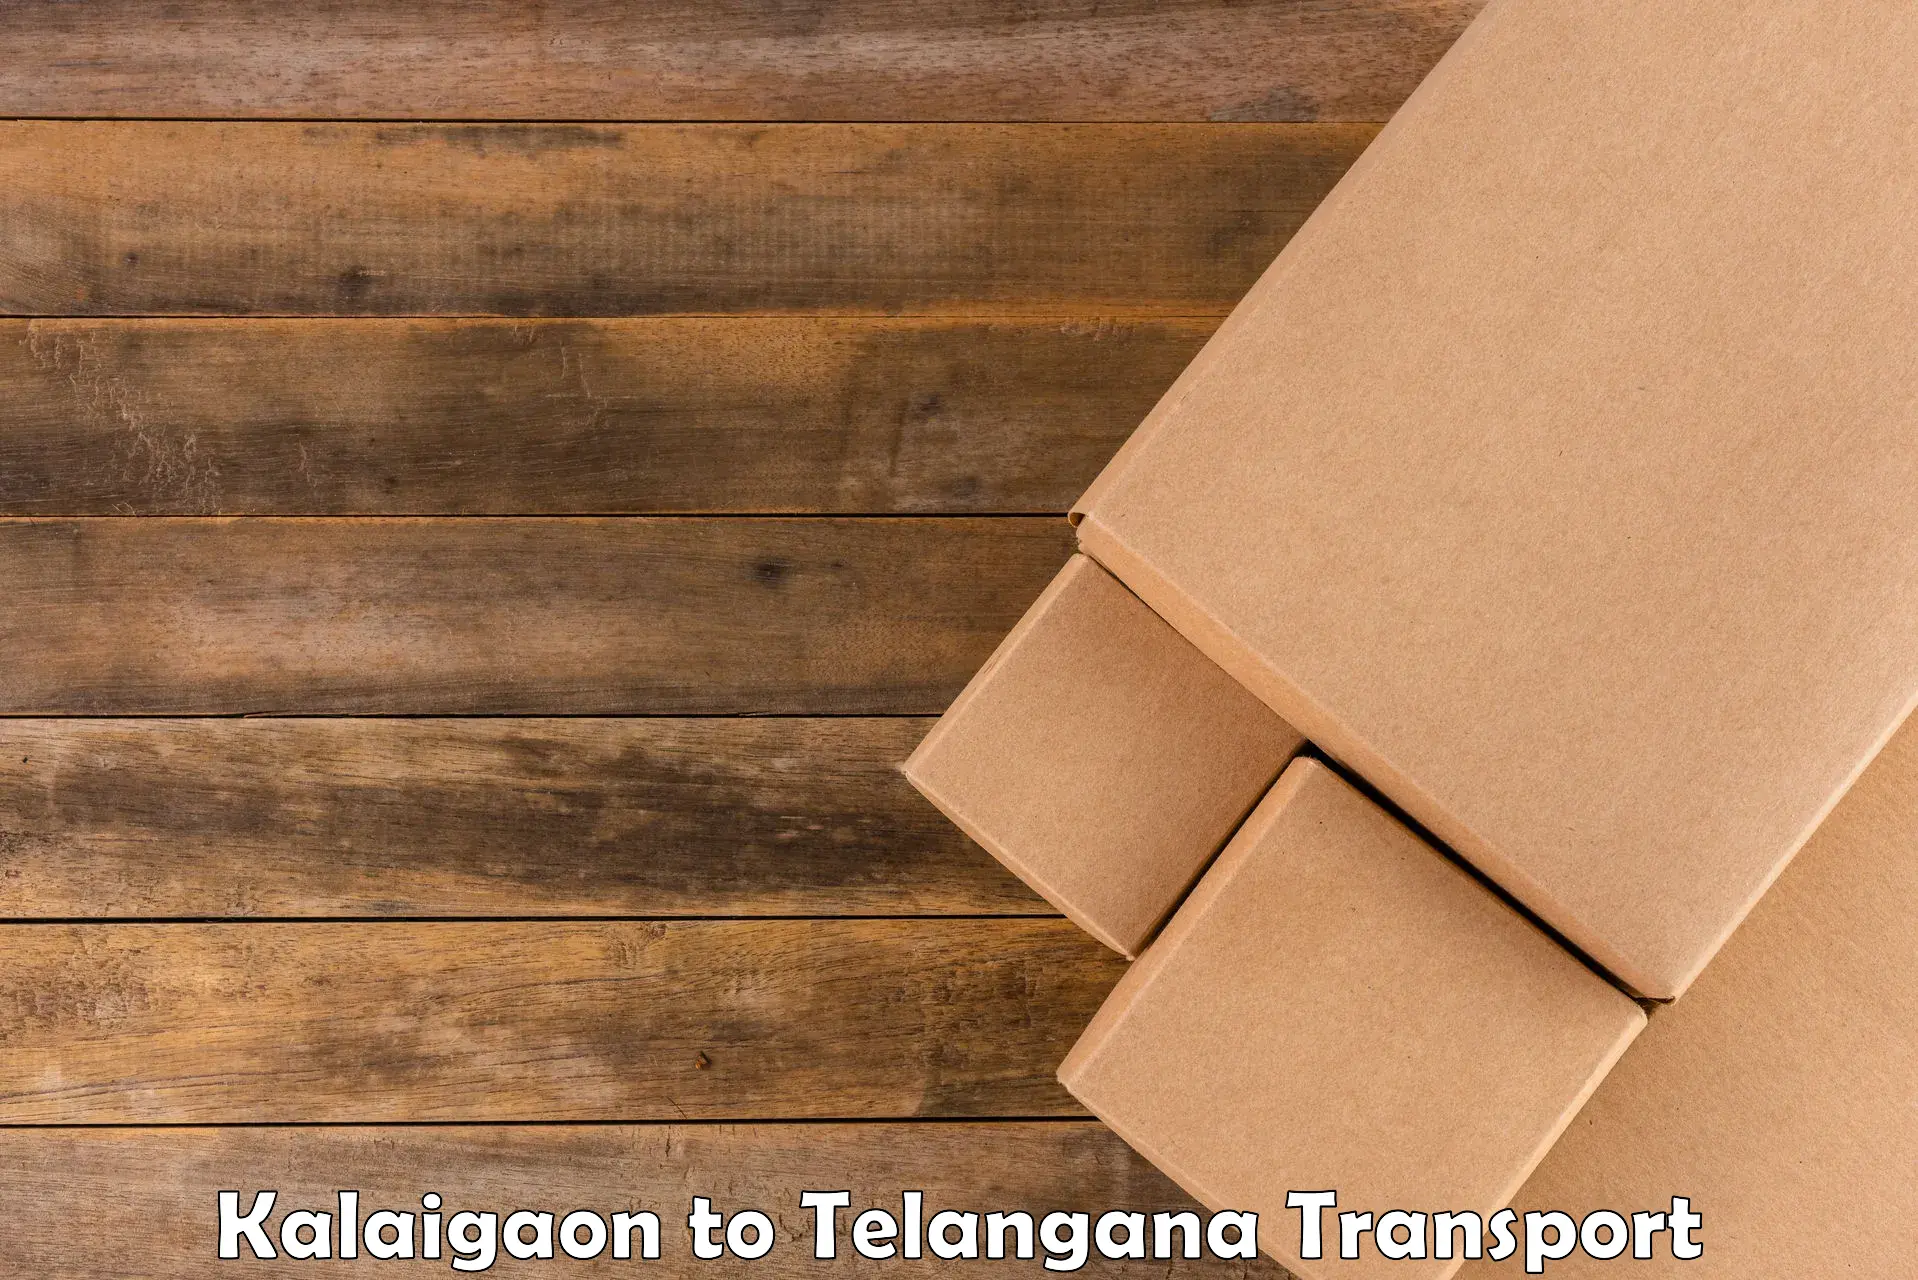 Online transport service Kalaigaon to Alair